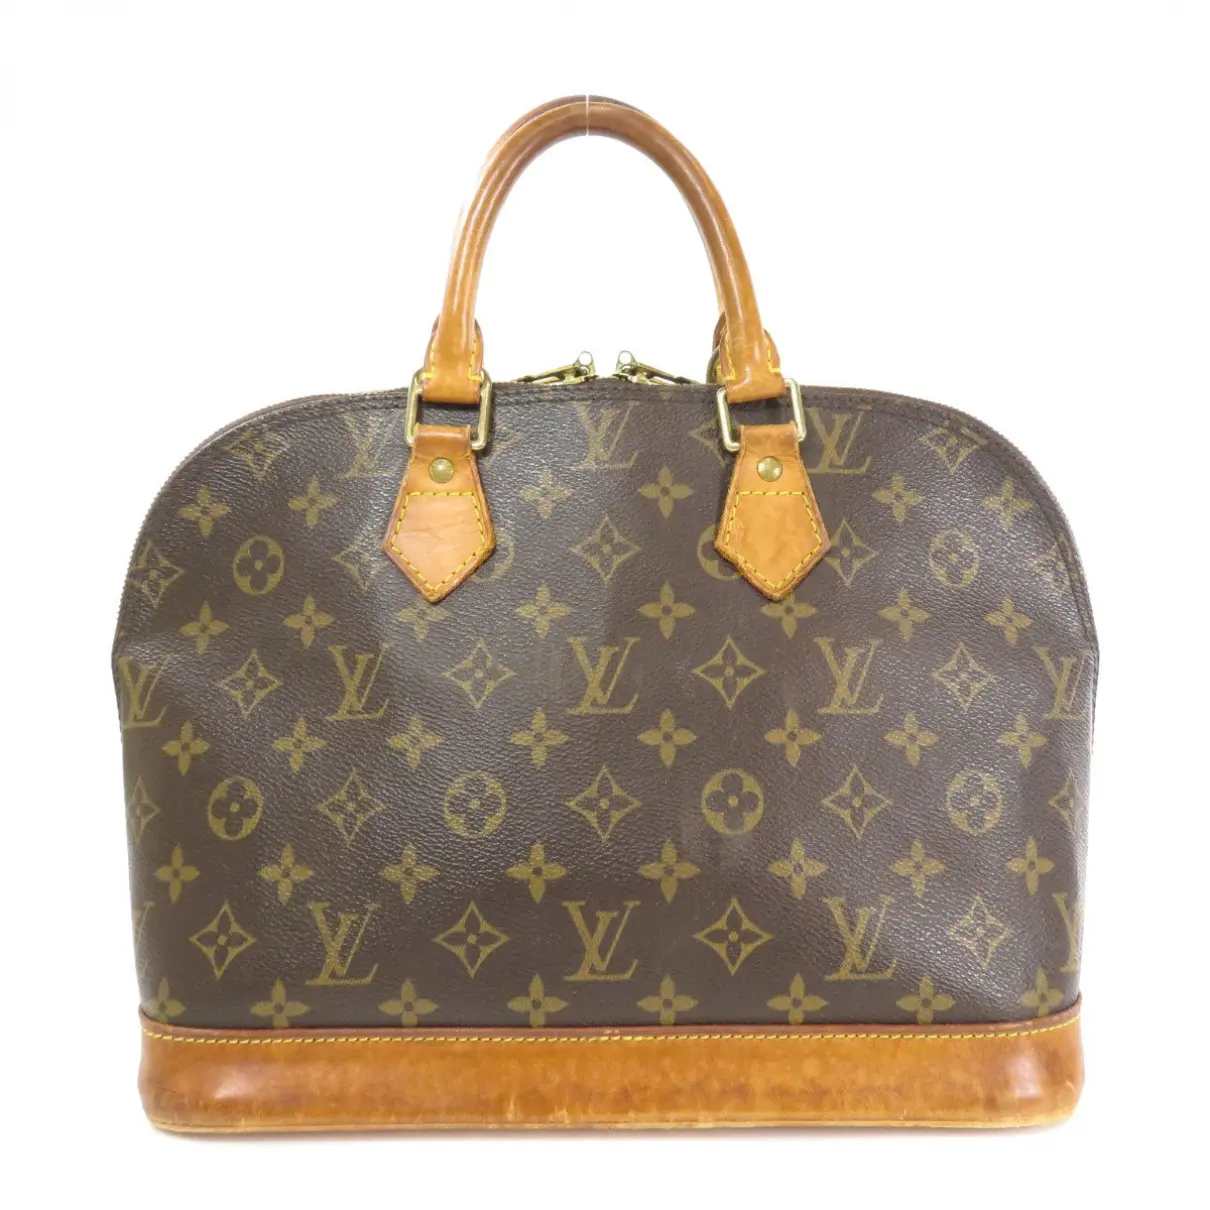 Buy Louis Vuitton Alma cloth handbag online